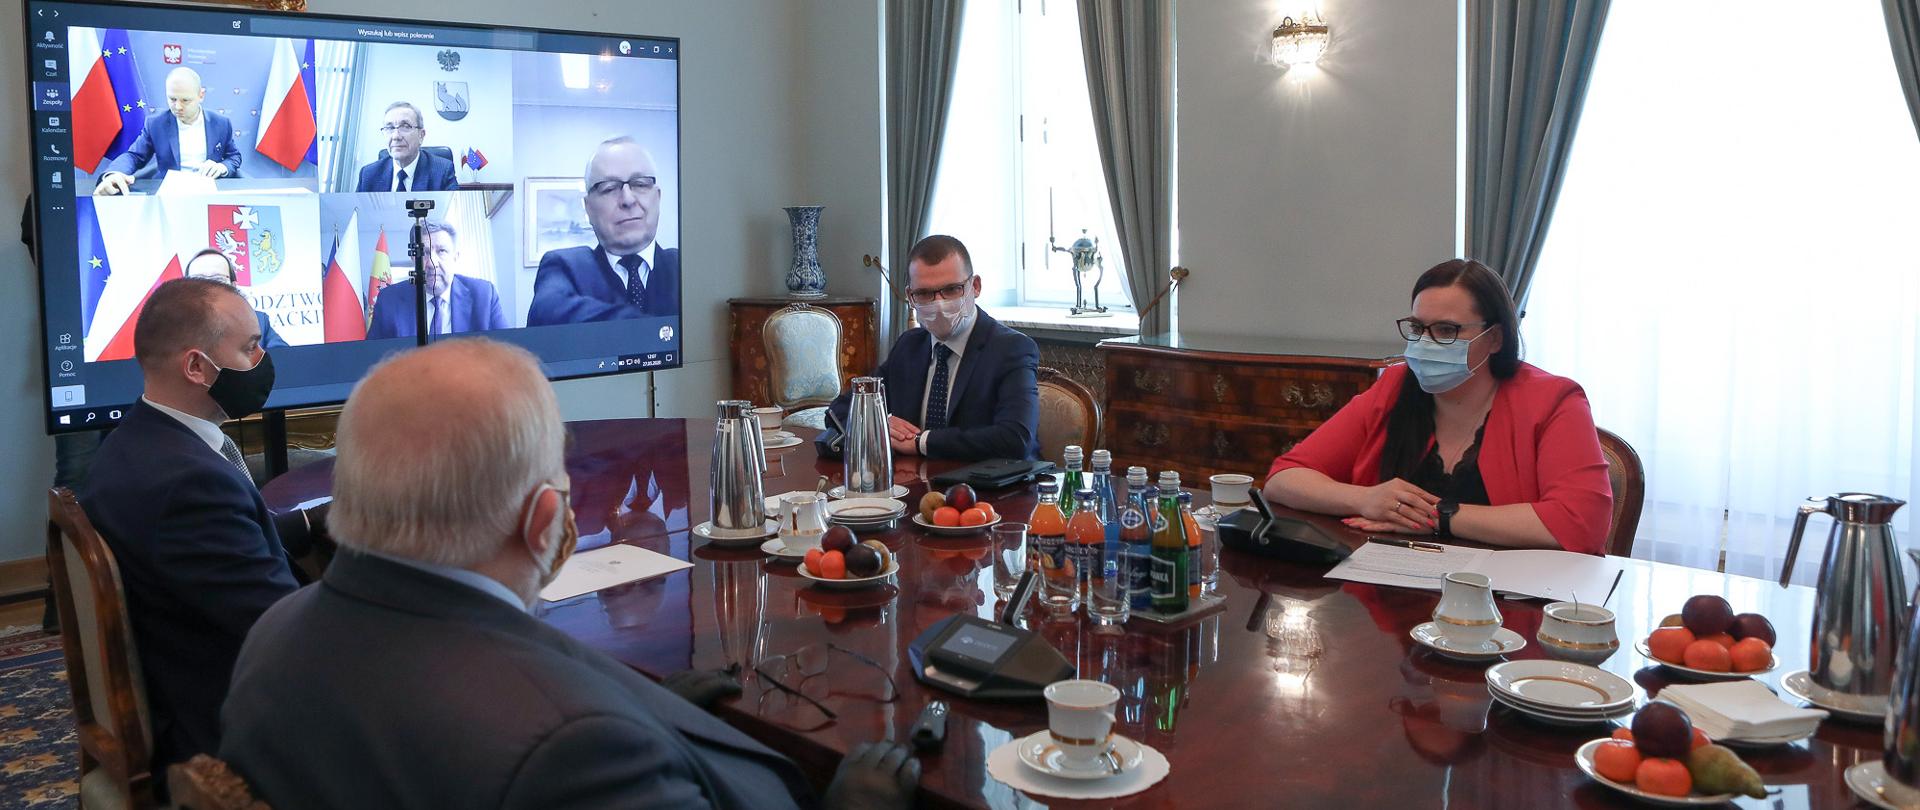 W pomieszczeniu przy dużym stole siedzą trzej mężczyźni i minister M. Jarosińska-Jedynak. Z boku na ścianie wisi monitor, na którym widać 5 osób. Trwa telekonferencja.